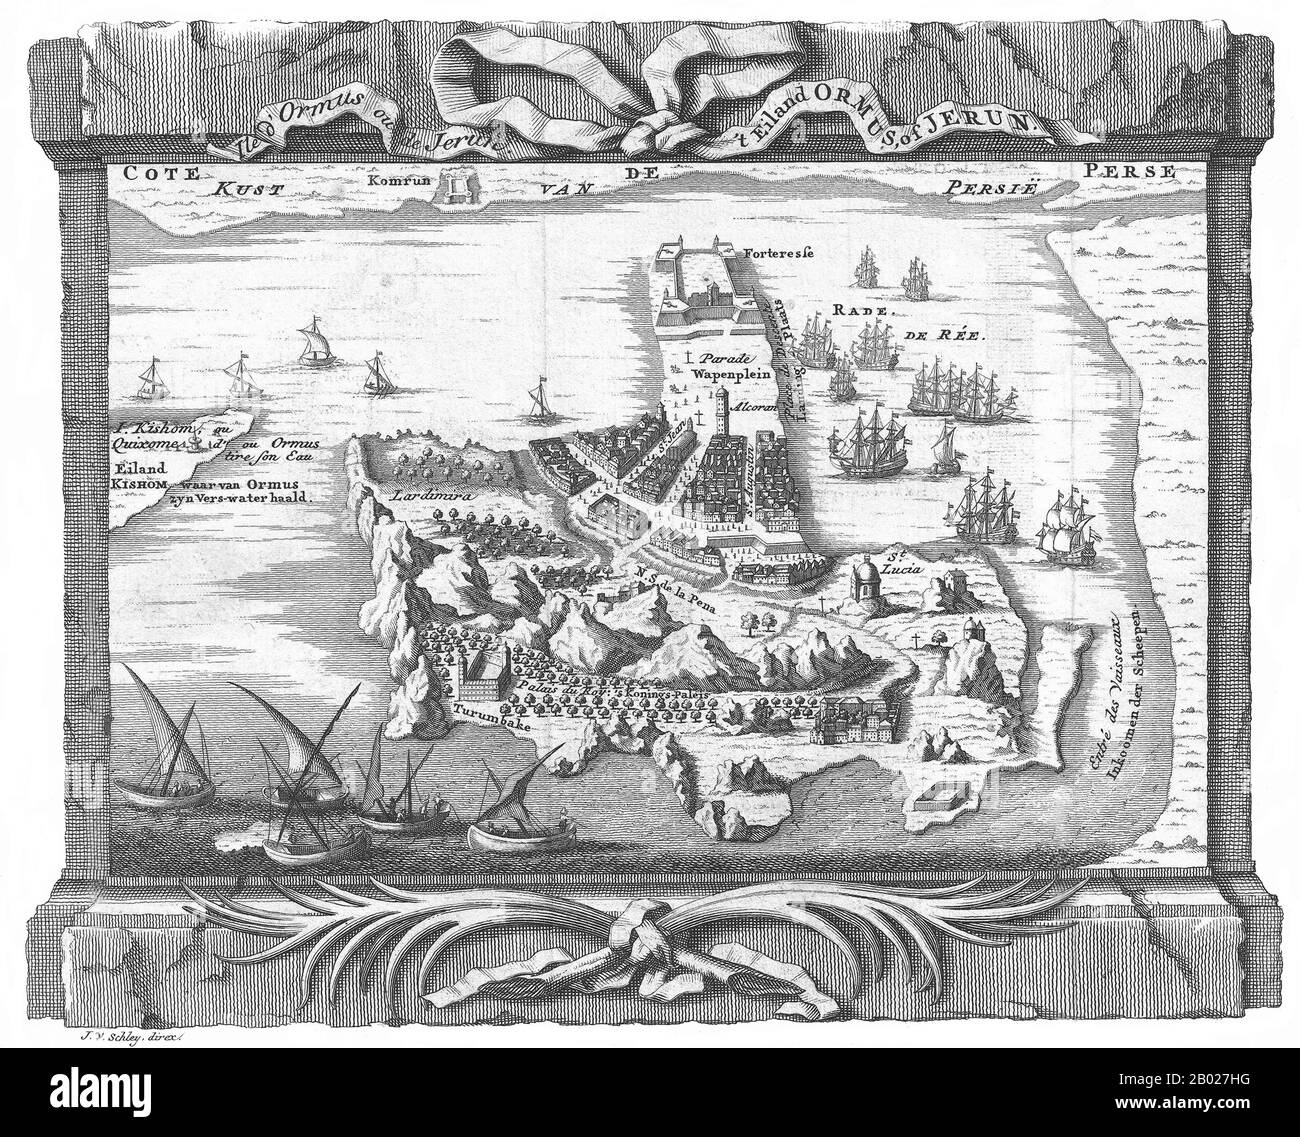 L'île de Hormuz (également orthographiée Hormoz) est une île iranienne dans le golfe Persique. Il est situé dans le détroit d'Hormuz et fait partie de la province de Hormozgān. Il a une superficie de 42 km² (16 miles carrés). L'île Hormuz faisait autrefois partie de l'Empire portugais. L'île a été conquise par l'explorateur portugais Afonso de Albuquerque dans la capture d'Ormuz. Il y a une forteresse historique portugaise sur l'île Hormuz, le fort De Notre Dame de la conception. L'île a ensuite été capturée par une force anglo-persane combinée en 1622 dans la capture d'Ormuz. Banque D'Images